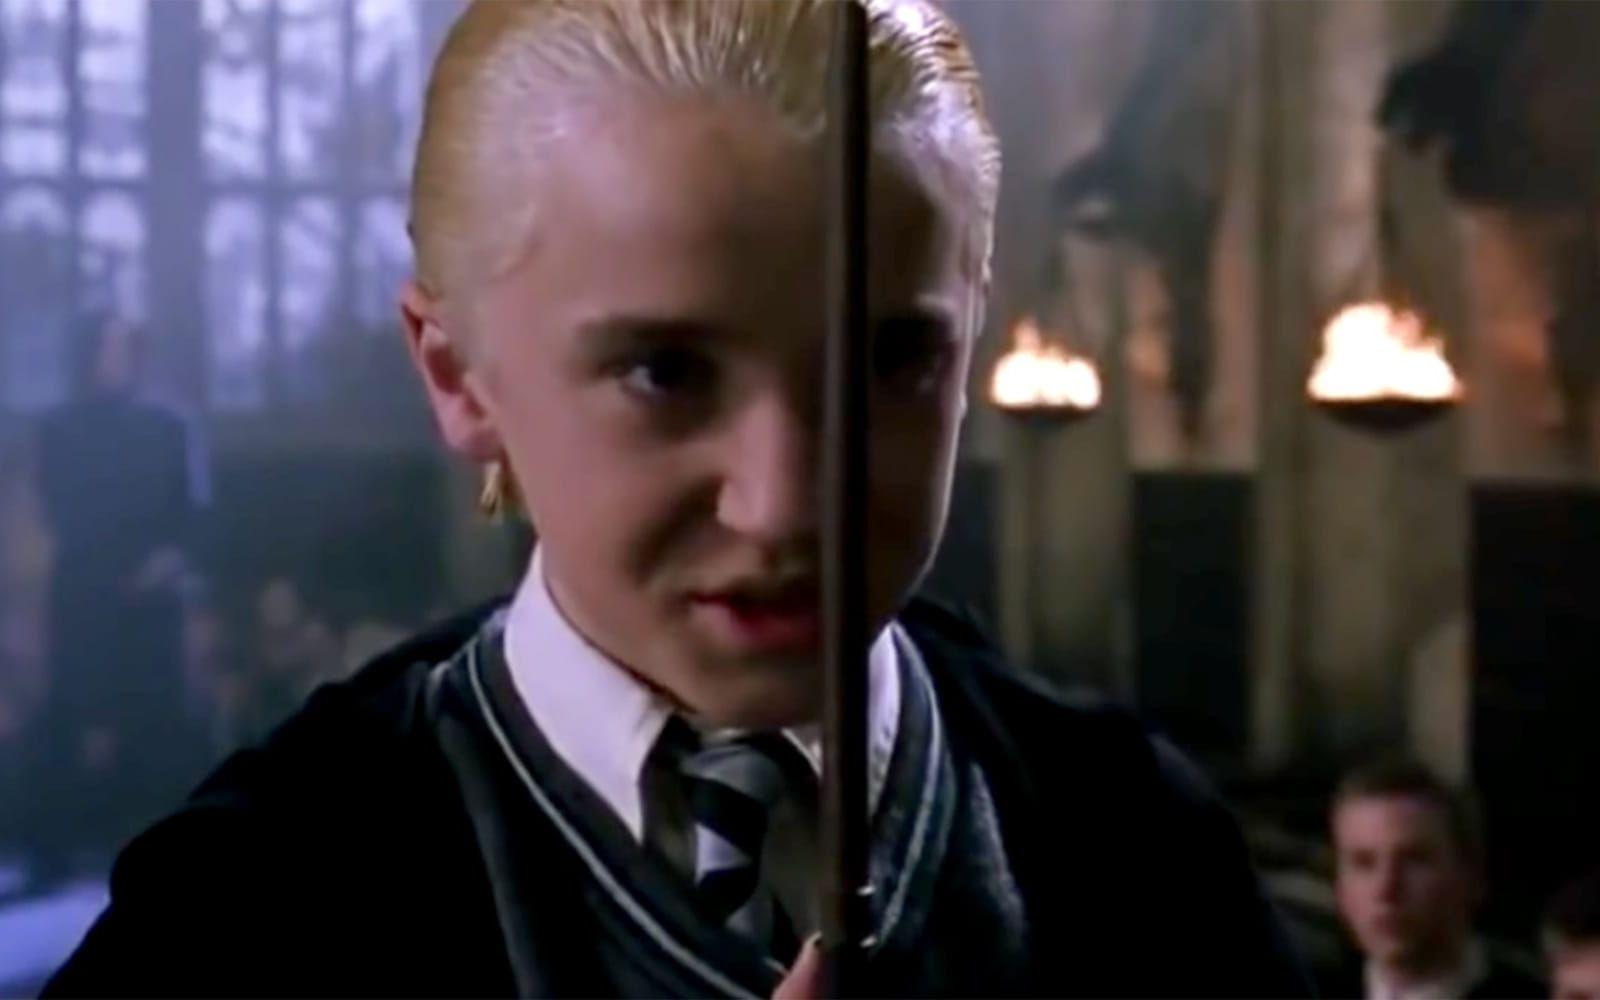 <strong>DÅ:</strong> Tom Felton spelade Draco Malfoy i Harry Potter-filmerna och hade hunnit bli fjorton år när den första filmen hade världspremiär. Foto: Warner Bros